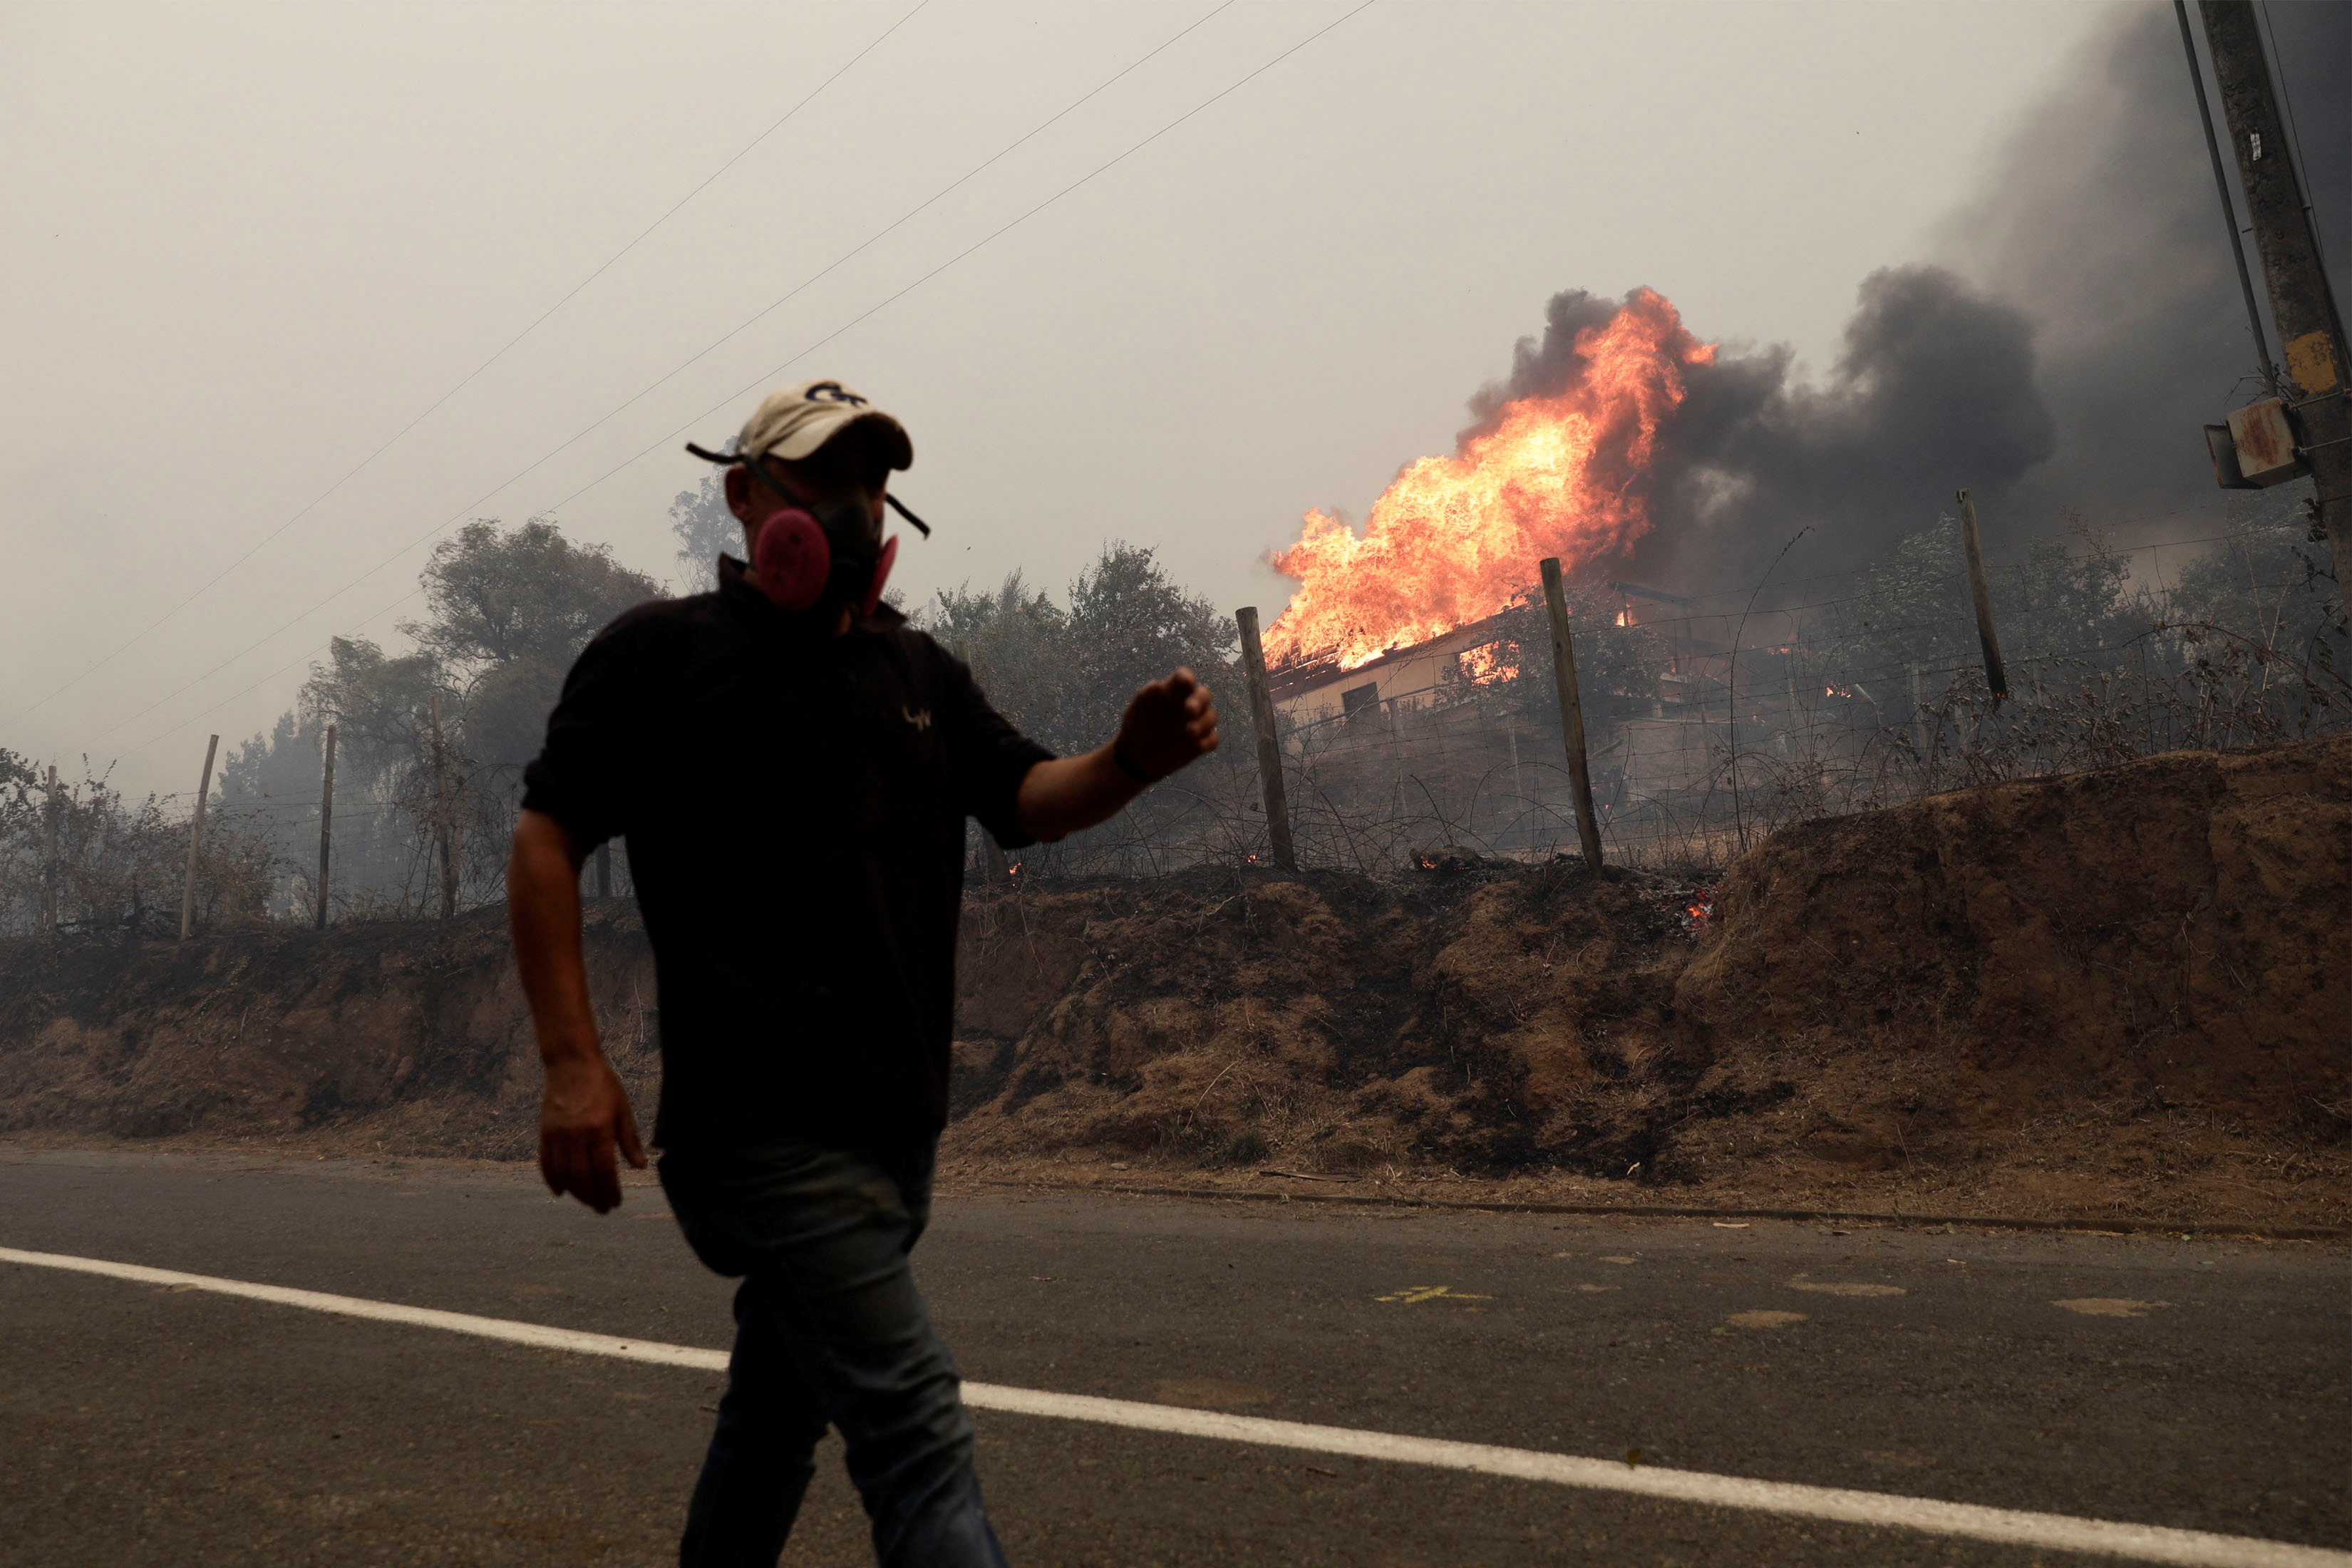 Wildfire burns areas around Santa Juana, Concepcion